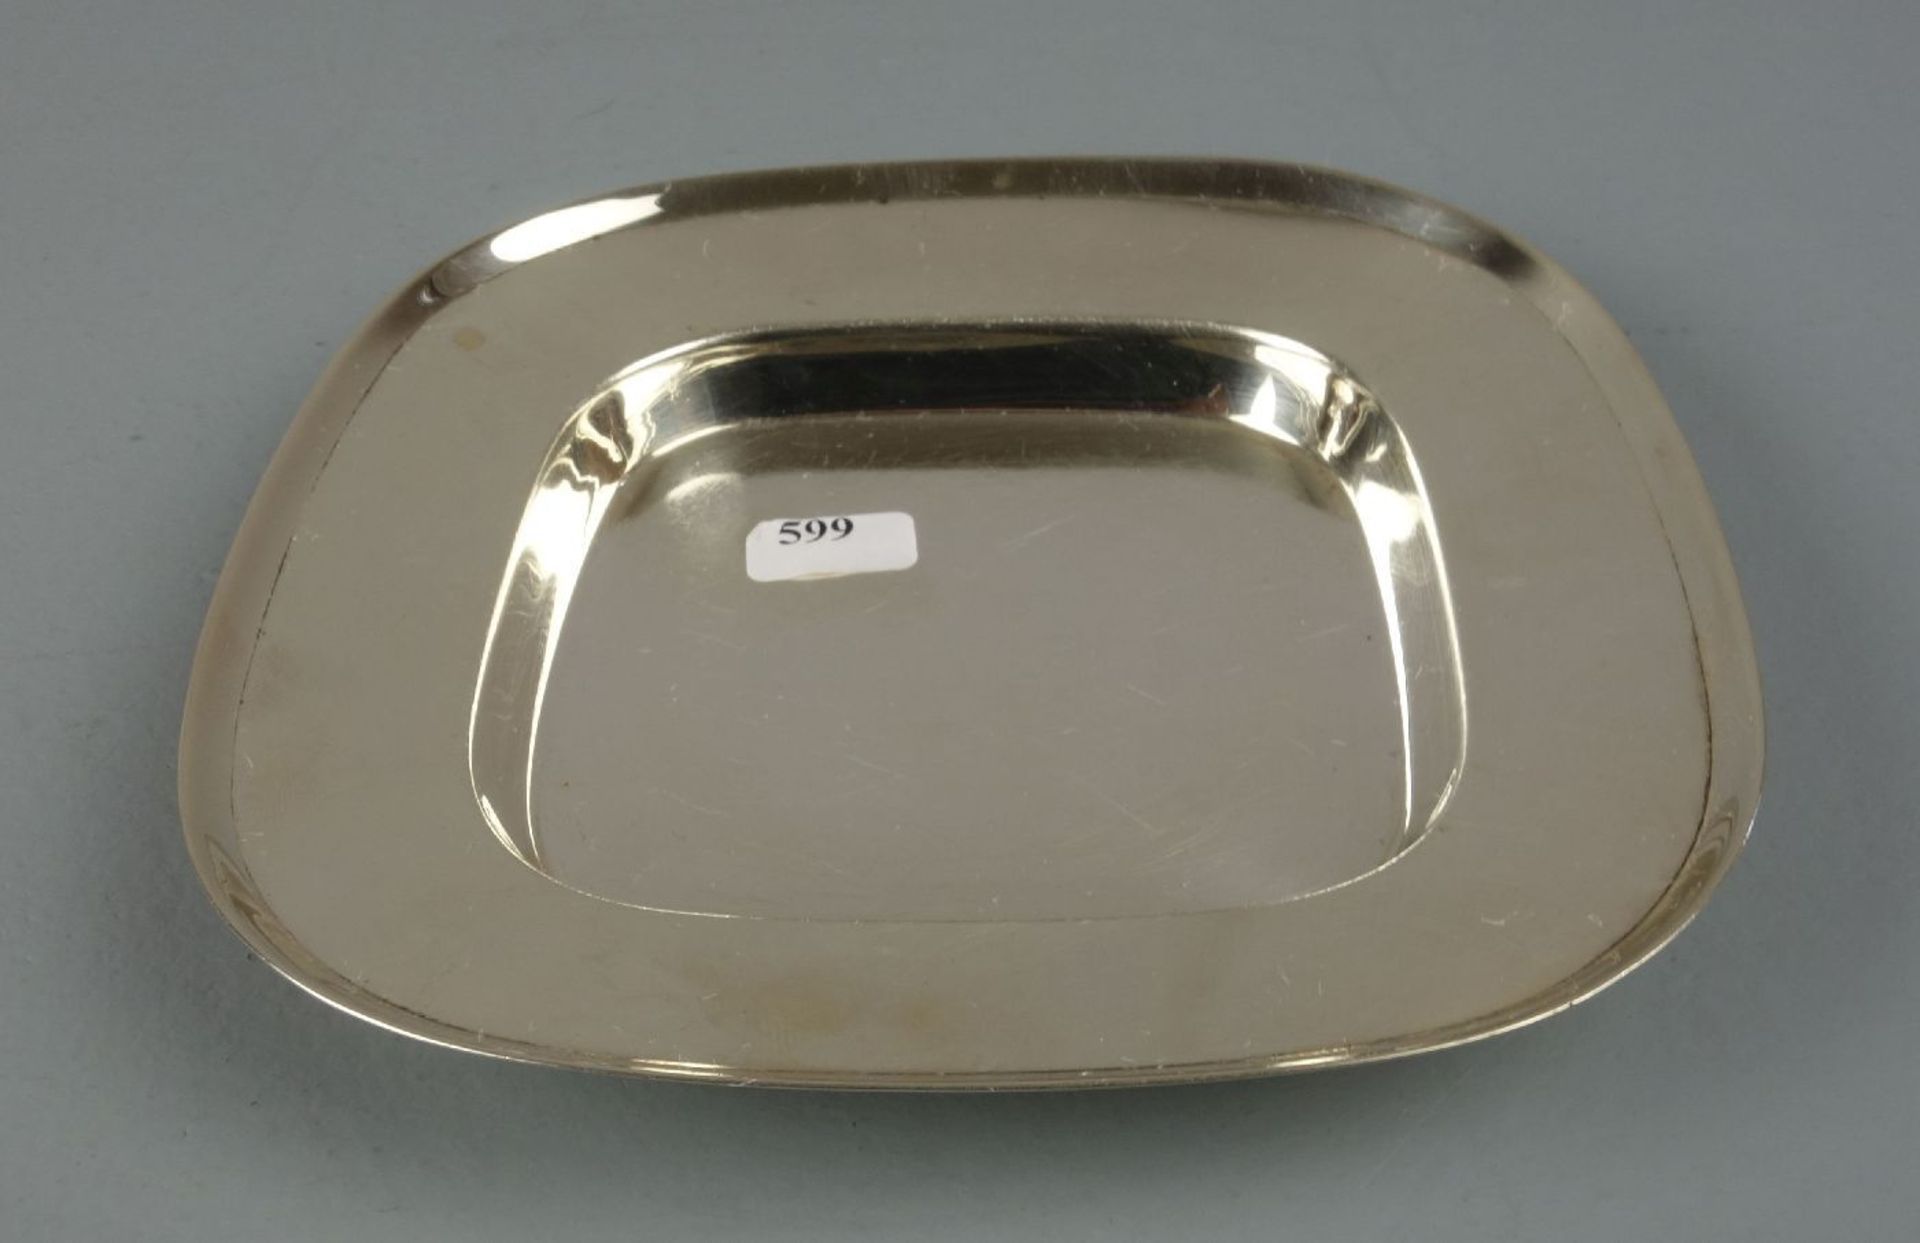 SCHALE / KARREESCHALE, 925er Silber (122 g), bezeichnet "Sterling", gepunzt mit Feingehaltsangabe